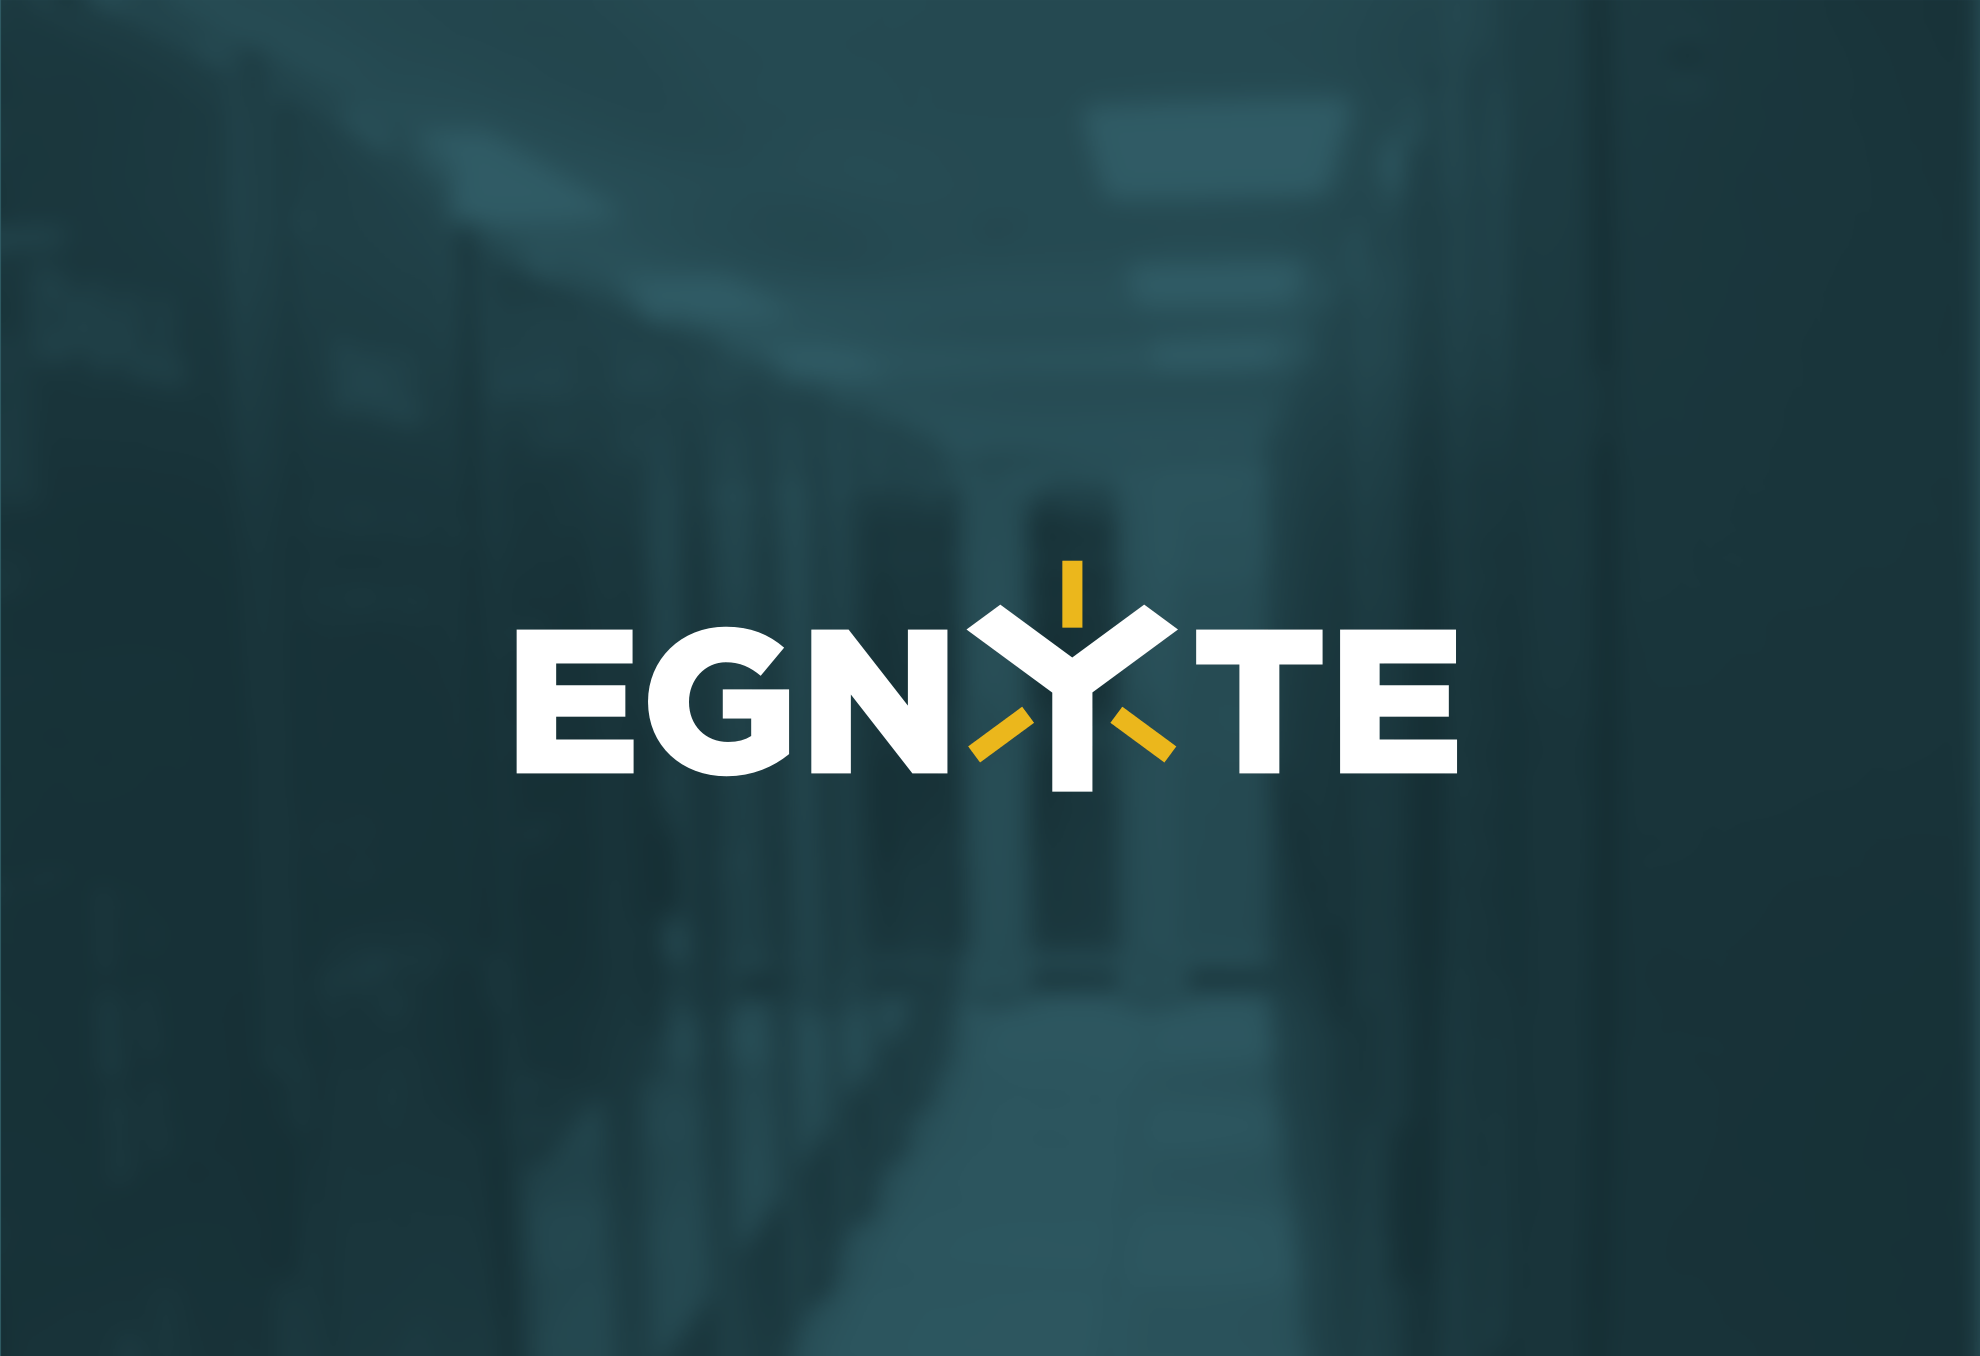 Egnyte Logo - EGNYTE Logo & Identity Design - 38one : 38one